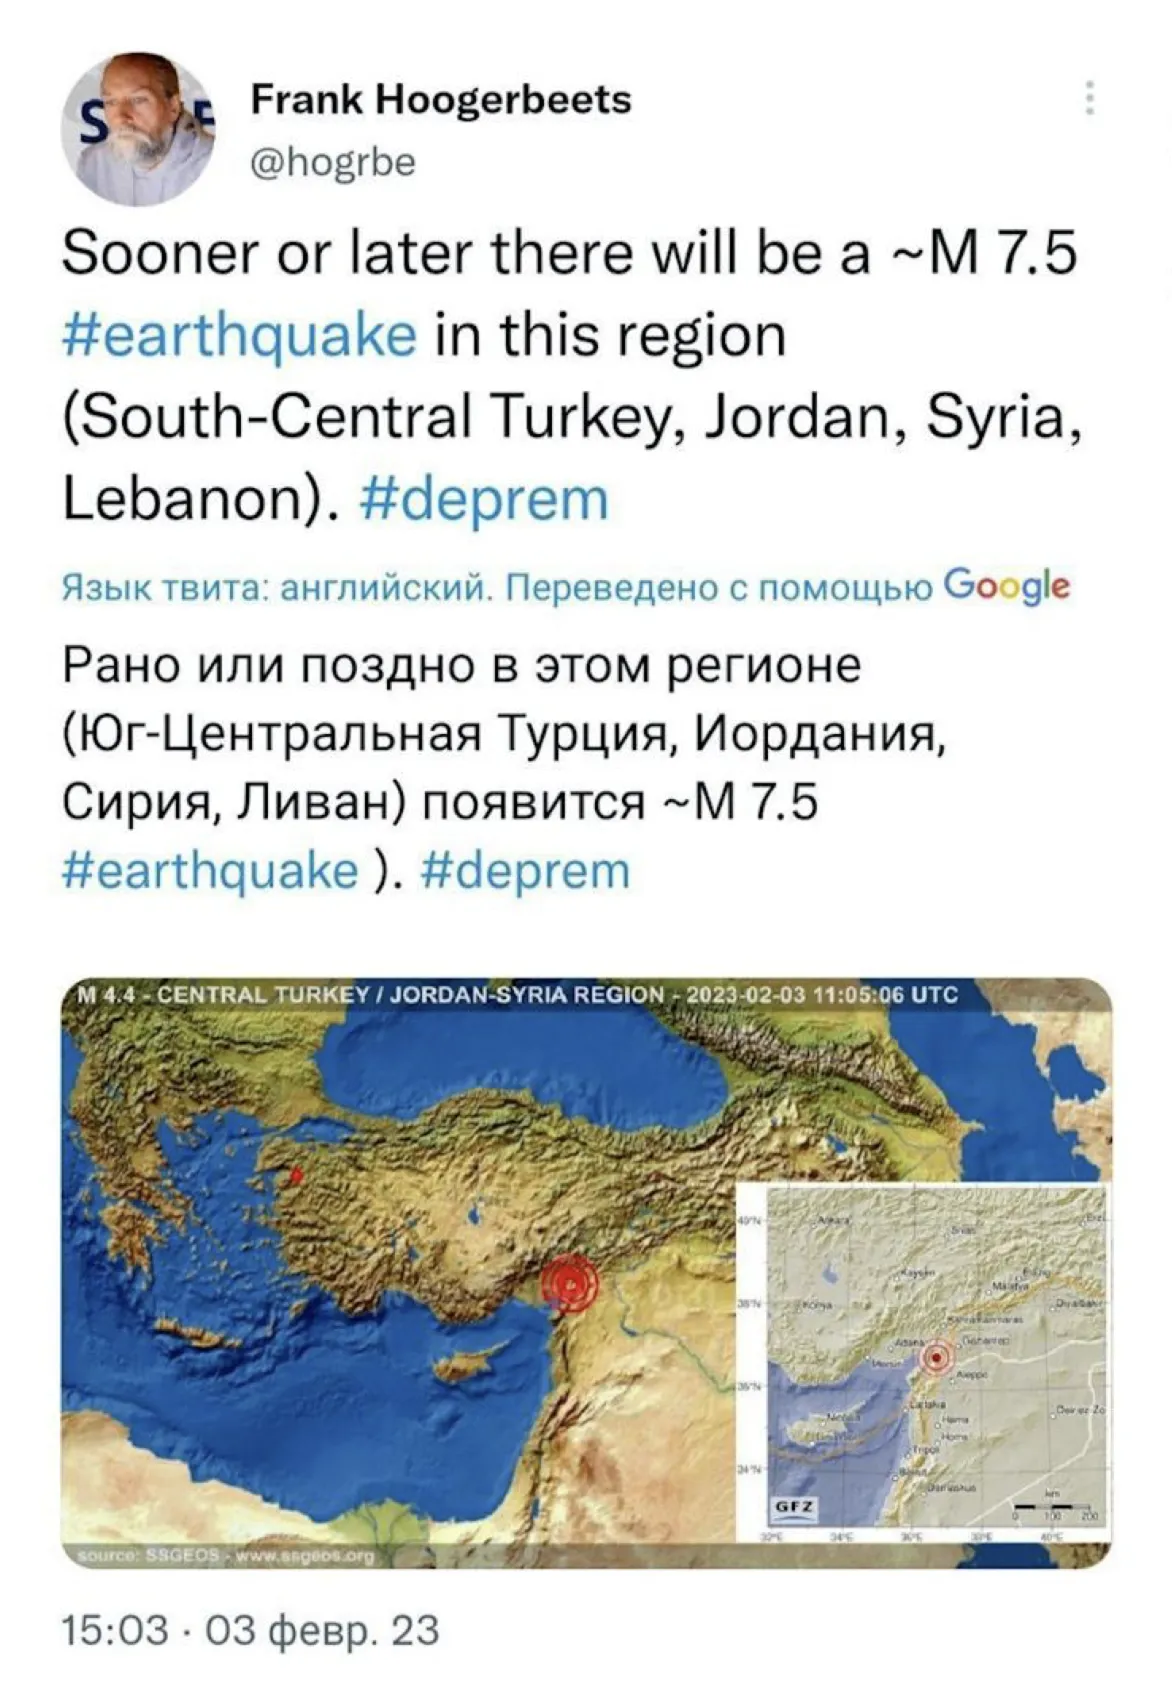 Скриншот поста Франка Хугербитса перед землетрясением в Турции